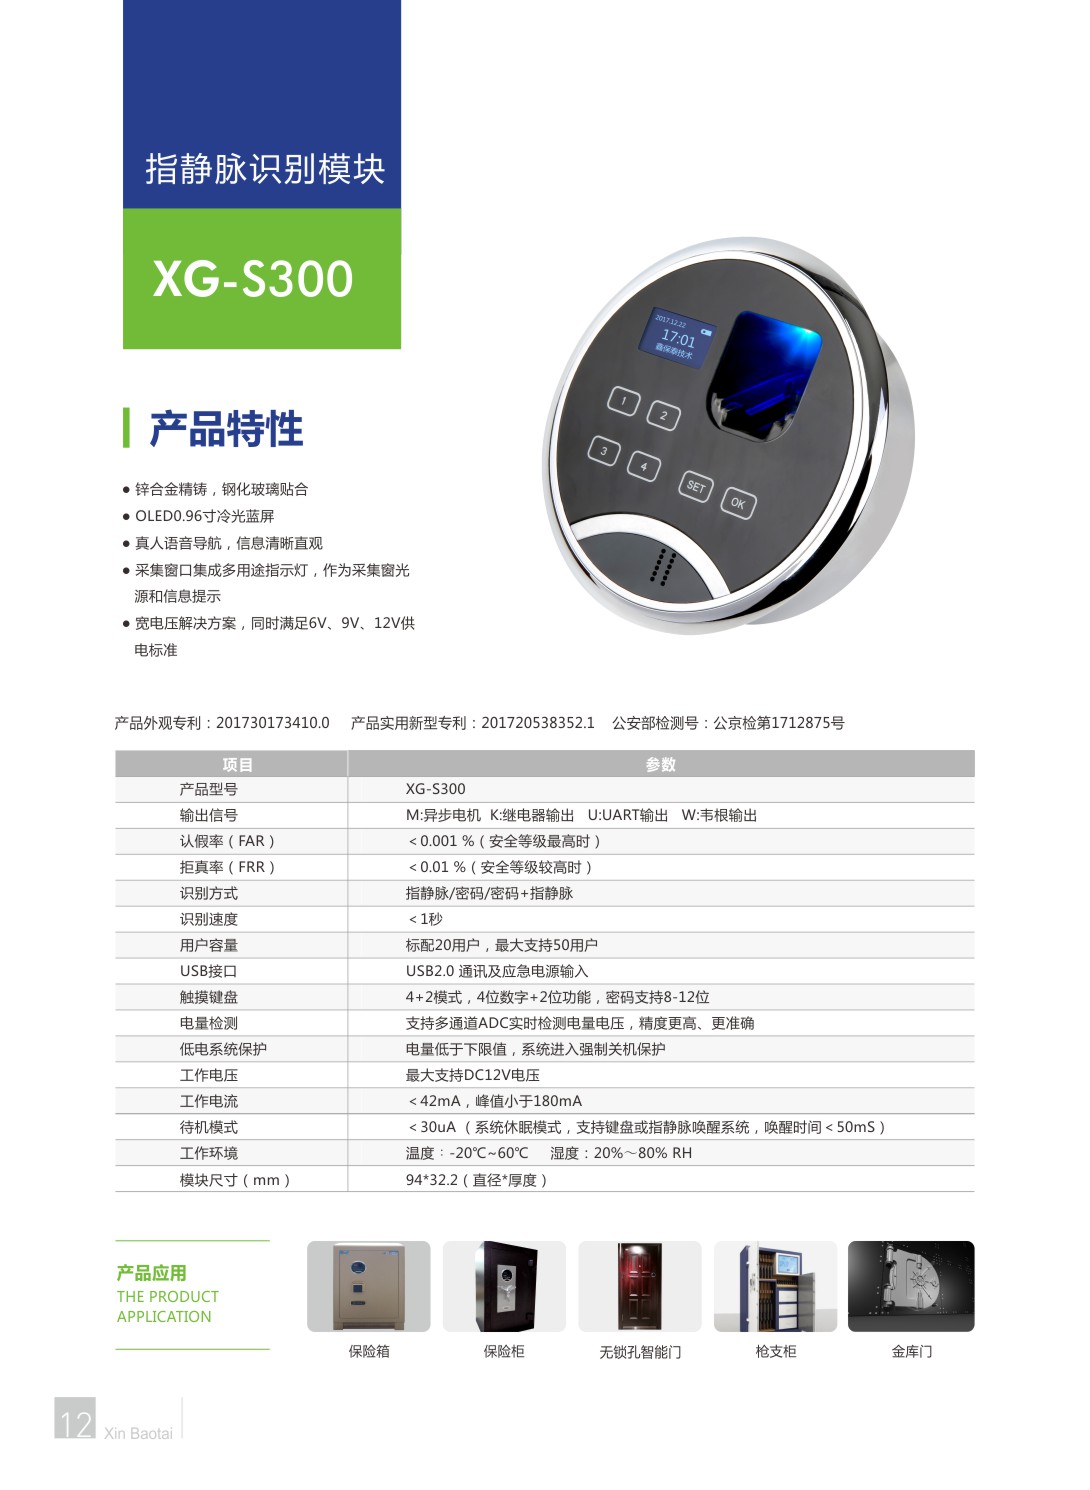 XG-S300.jpg